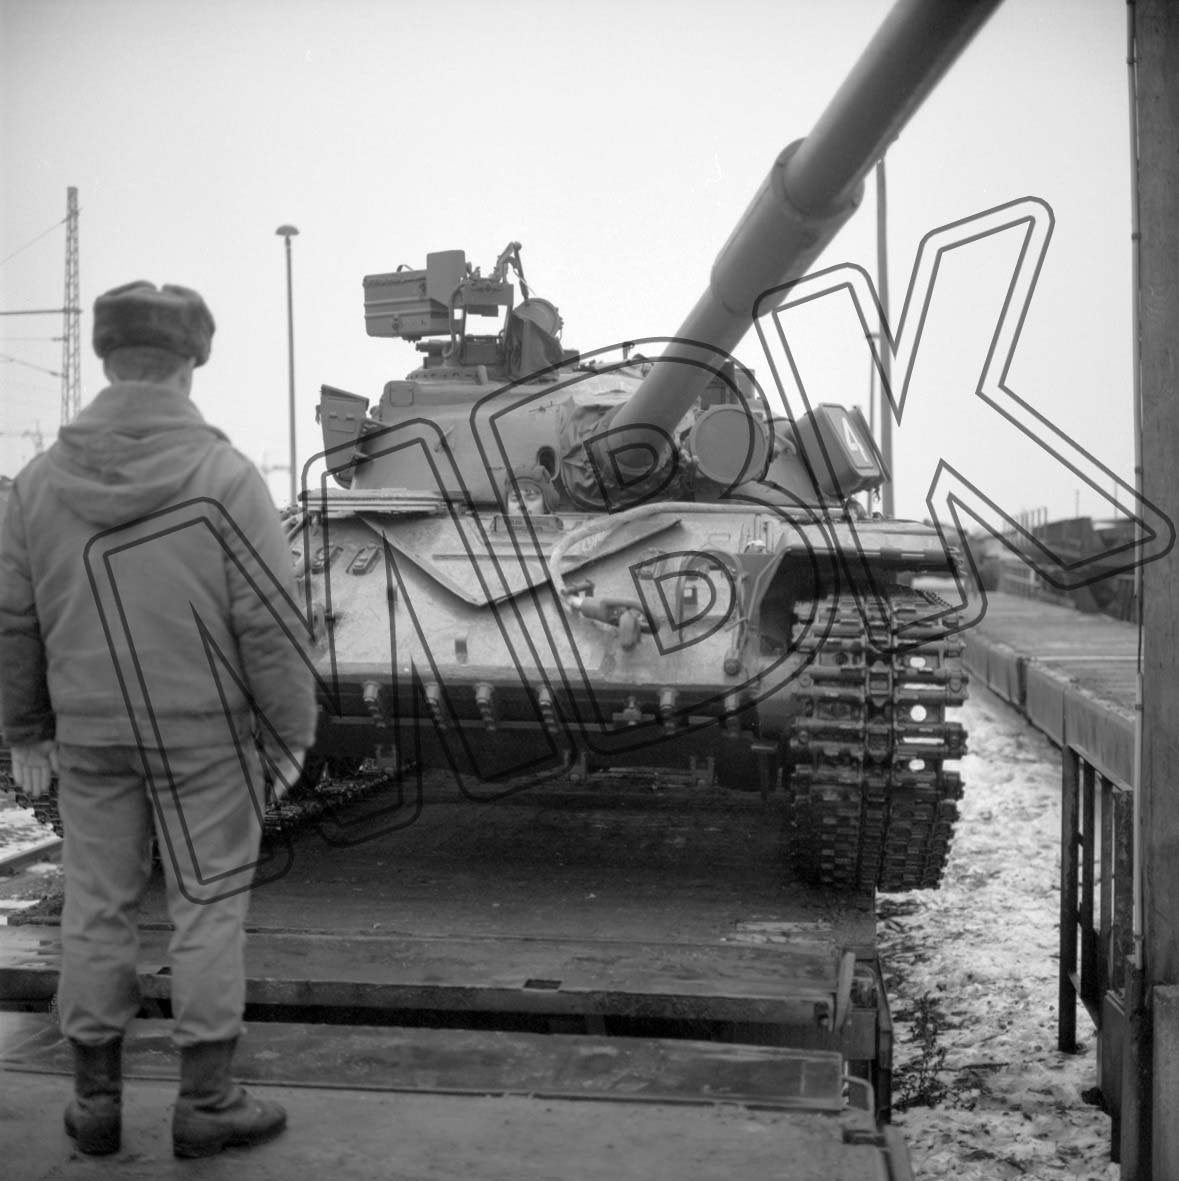 Fotografie: Einweisung der Panzer auf Eisenbahnwaggons, Güterbahnhof Berlin-Adlershof, 3. Dezember 1993 (Museum Berlin-Karlshorst RR-P)